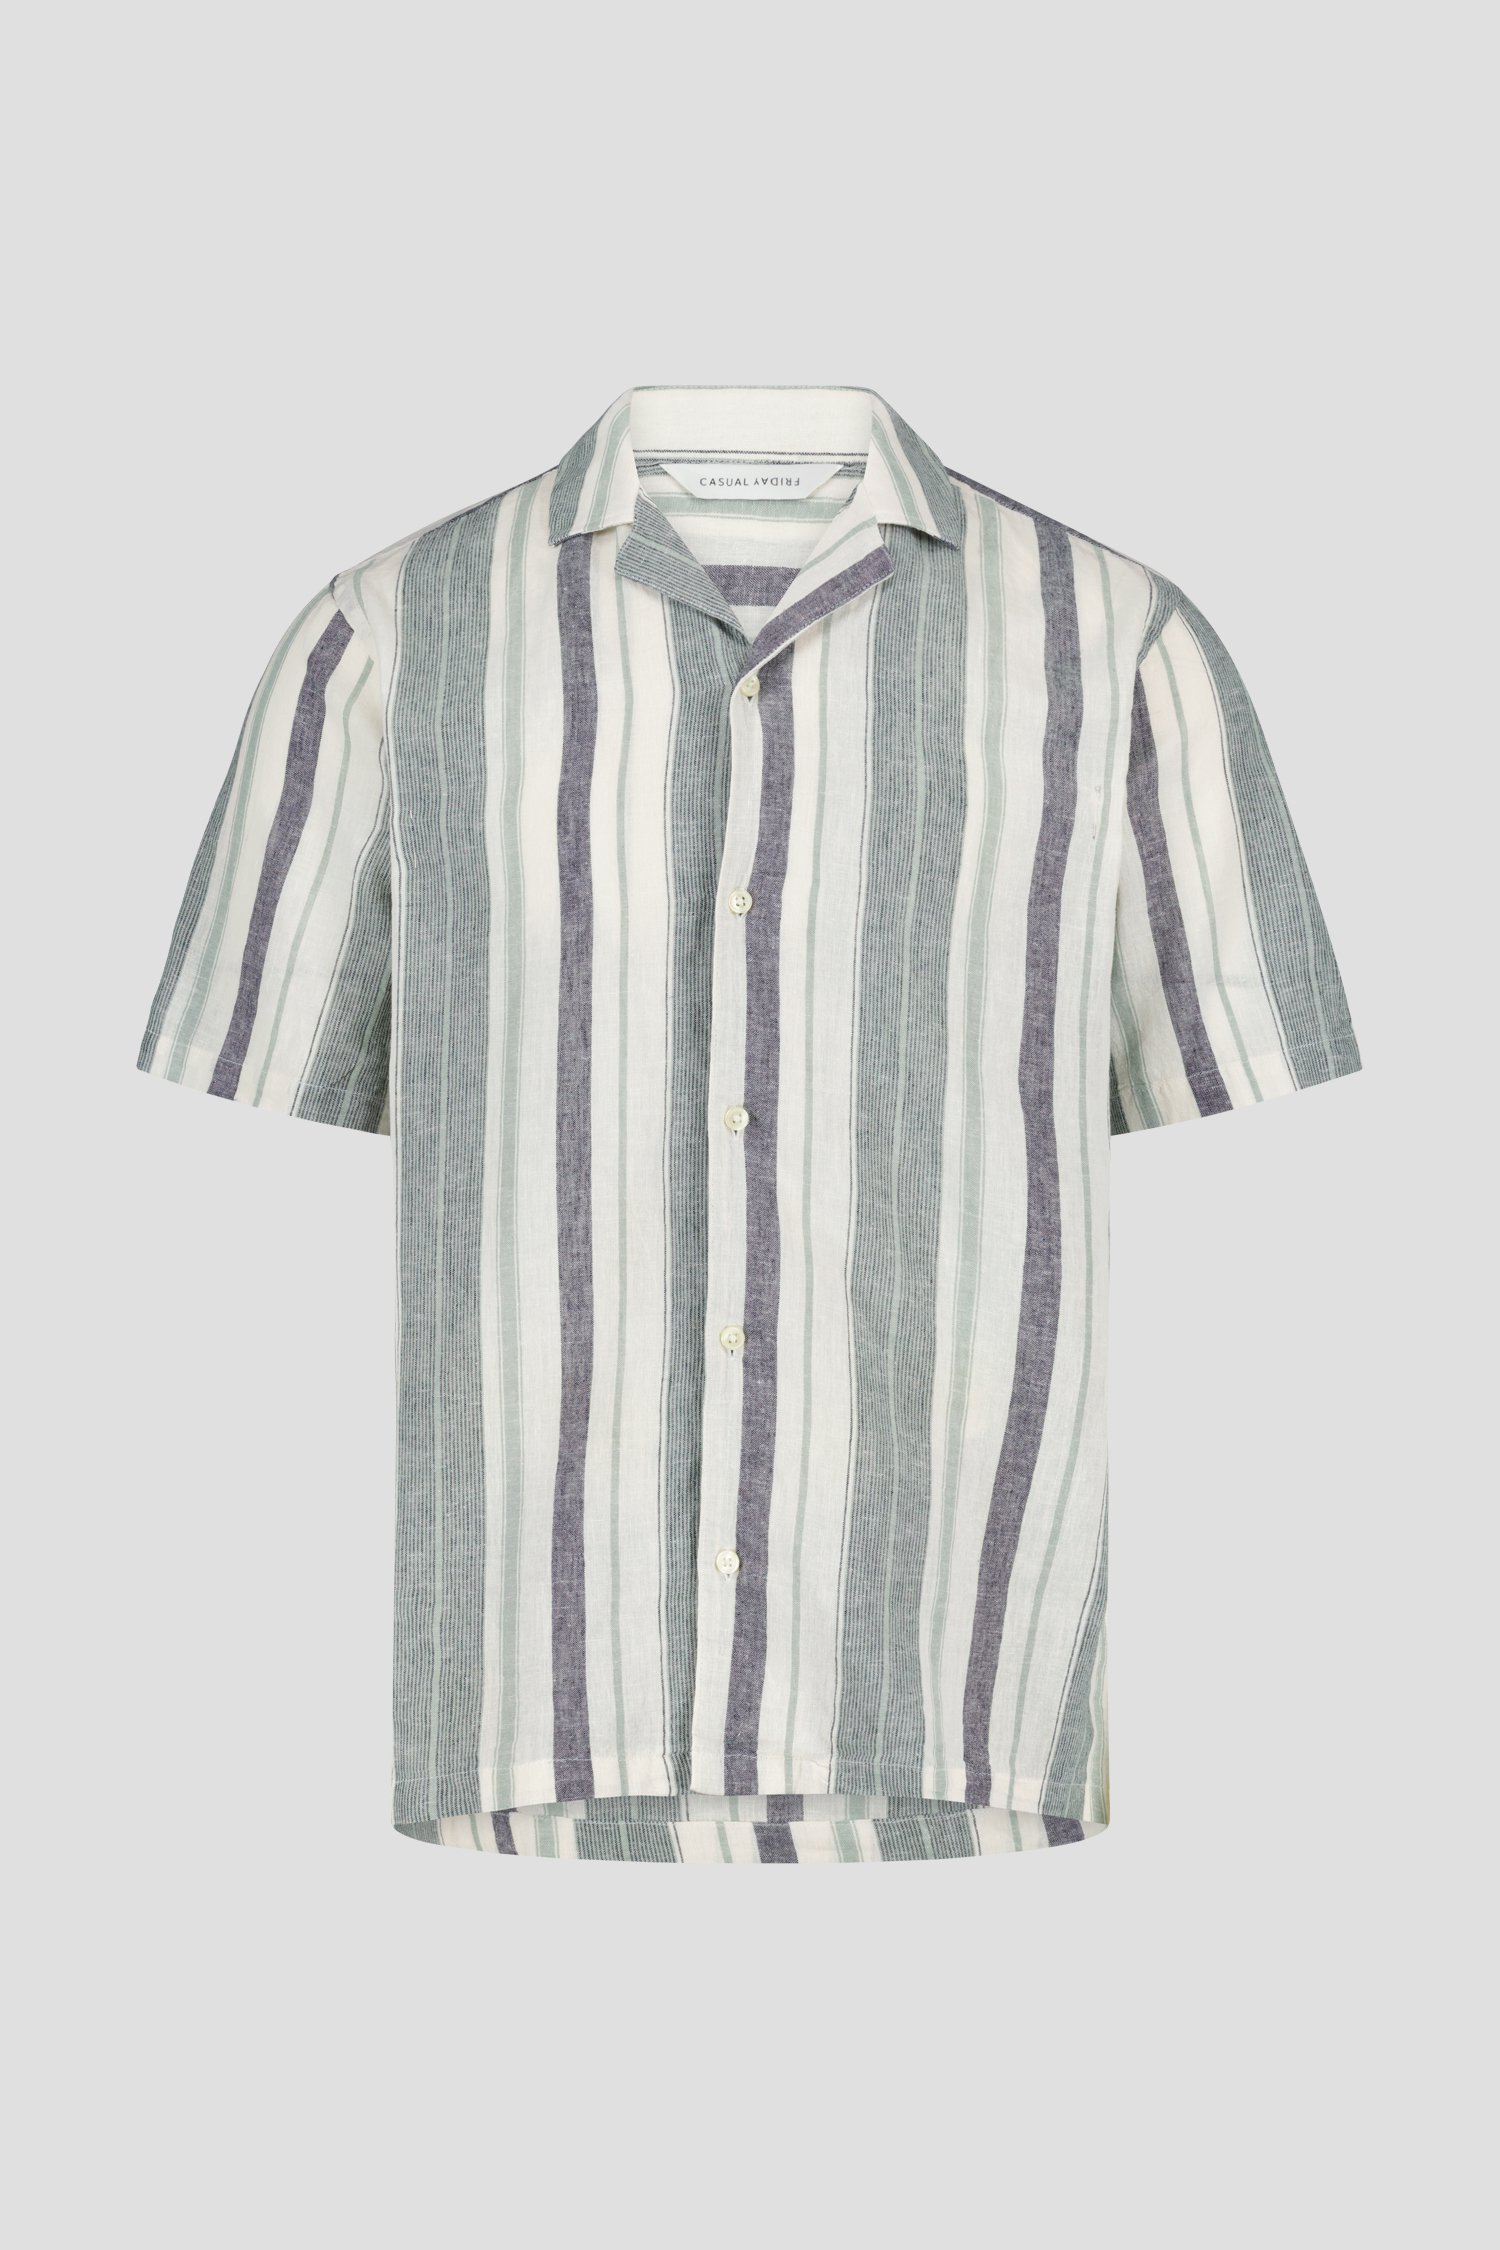 Linnen hemd met strepenpatroon - regular fit van Casual Friday voor Heren